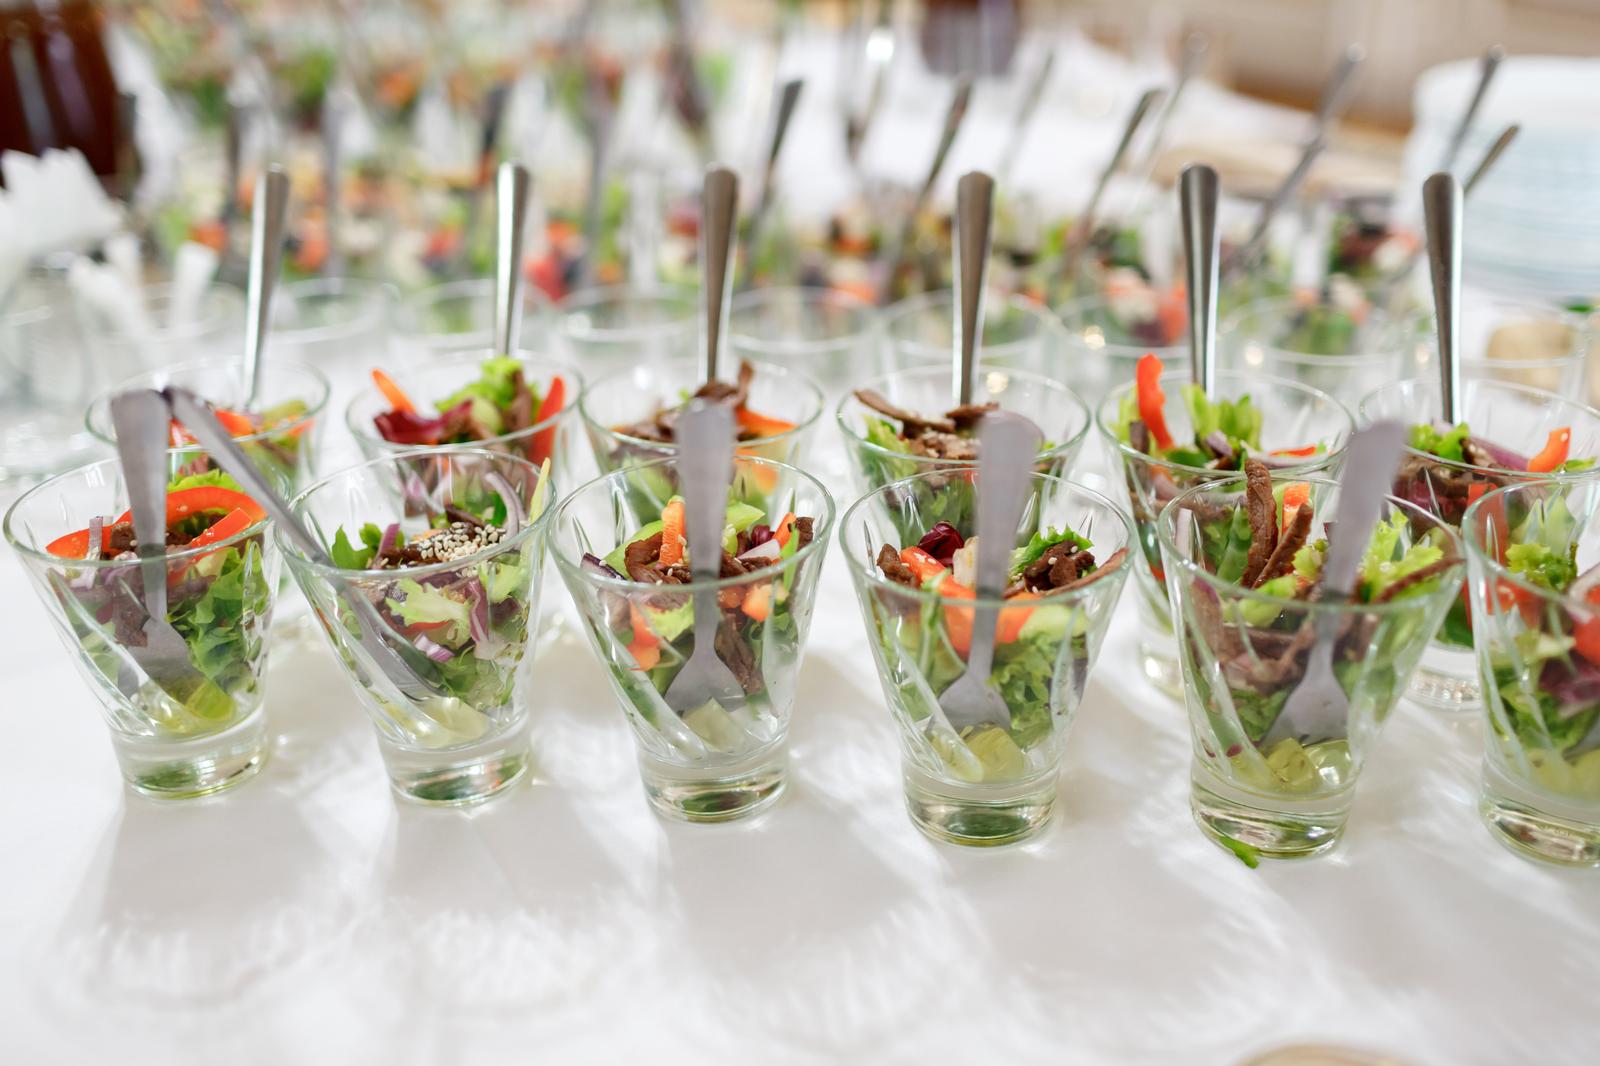 BEST FOOD K&H OÜ - Event catering activities in Estonia